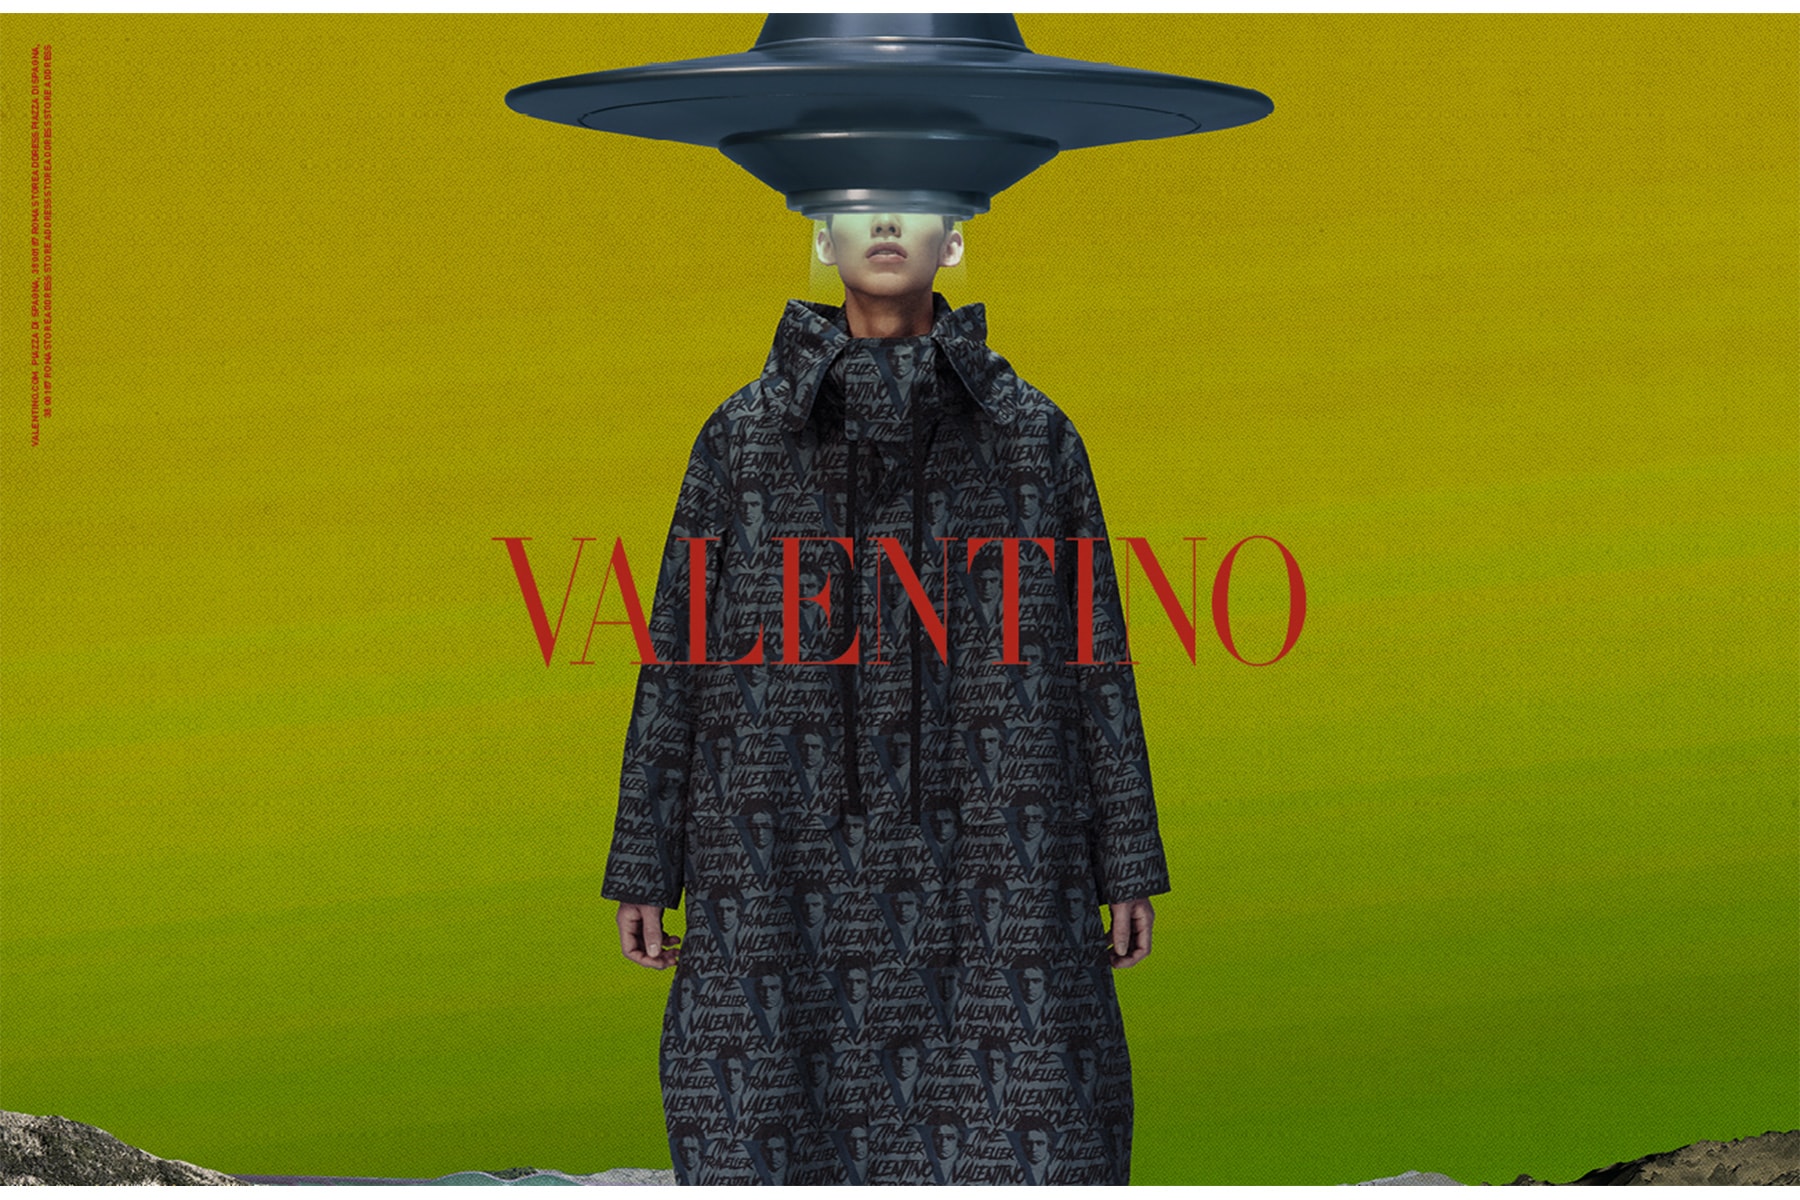 ヴァレンティノ valentino 2019 20 秋冬 メンズ キャンペーン ビジュアル UNDERCOVER アンダーカバー